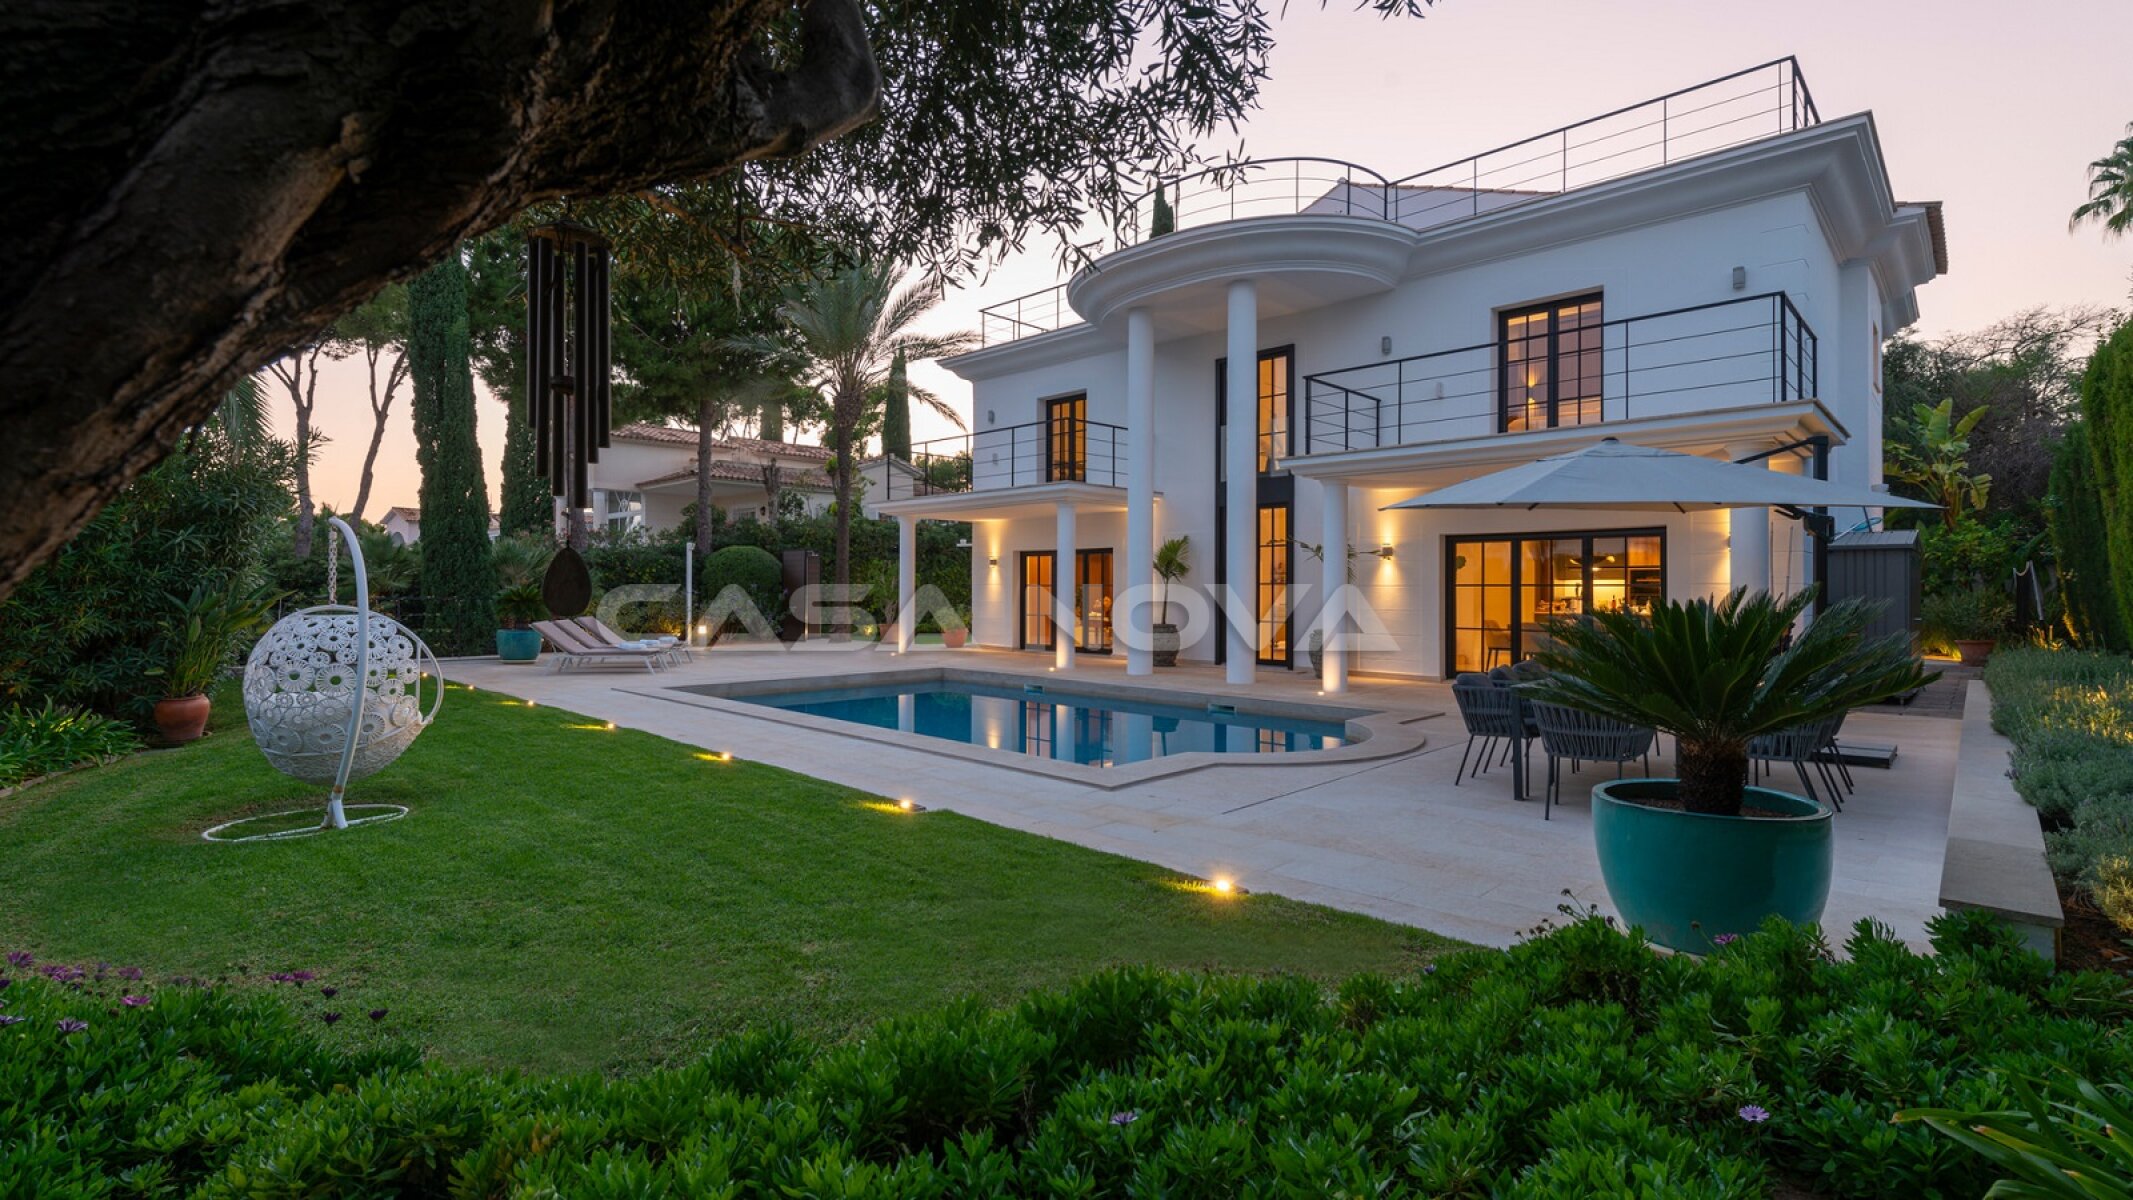 Elegante residencia familiar con jardines mediterrneos